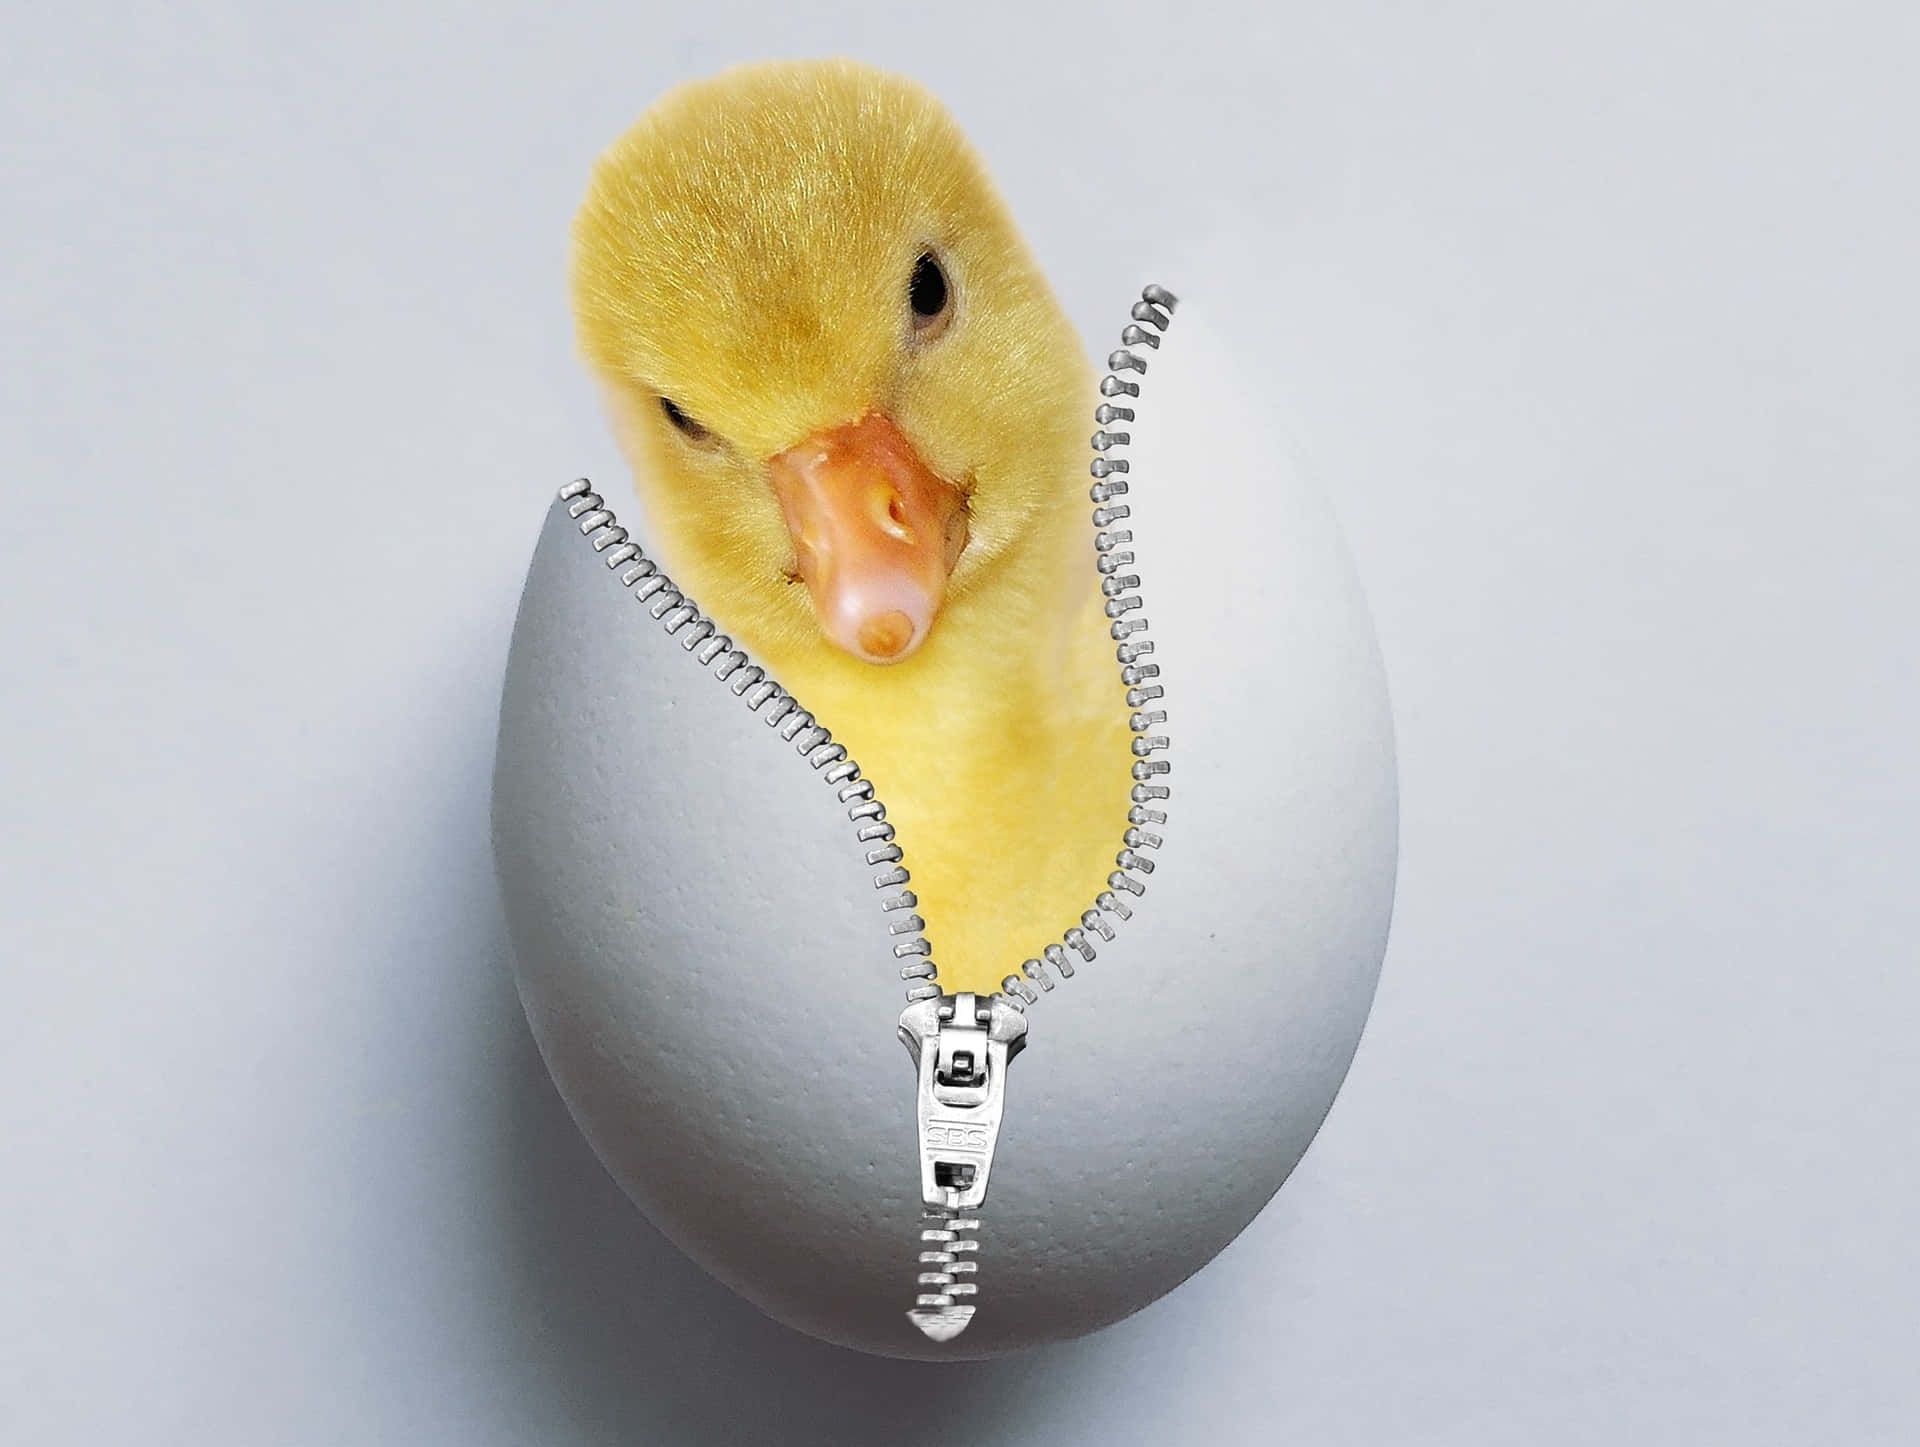 Duckling Hatching From Zippered Egg.jpg Wallpaper